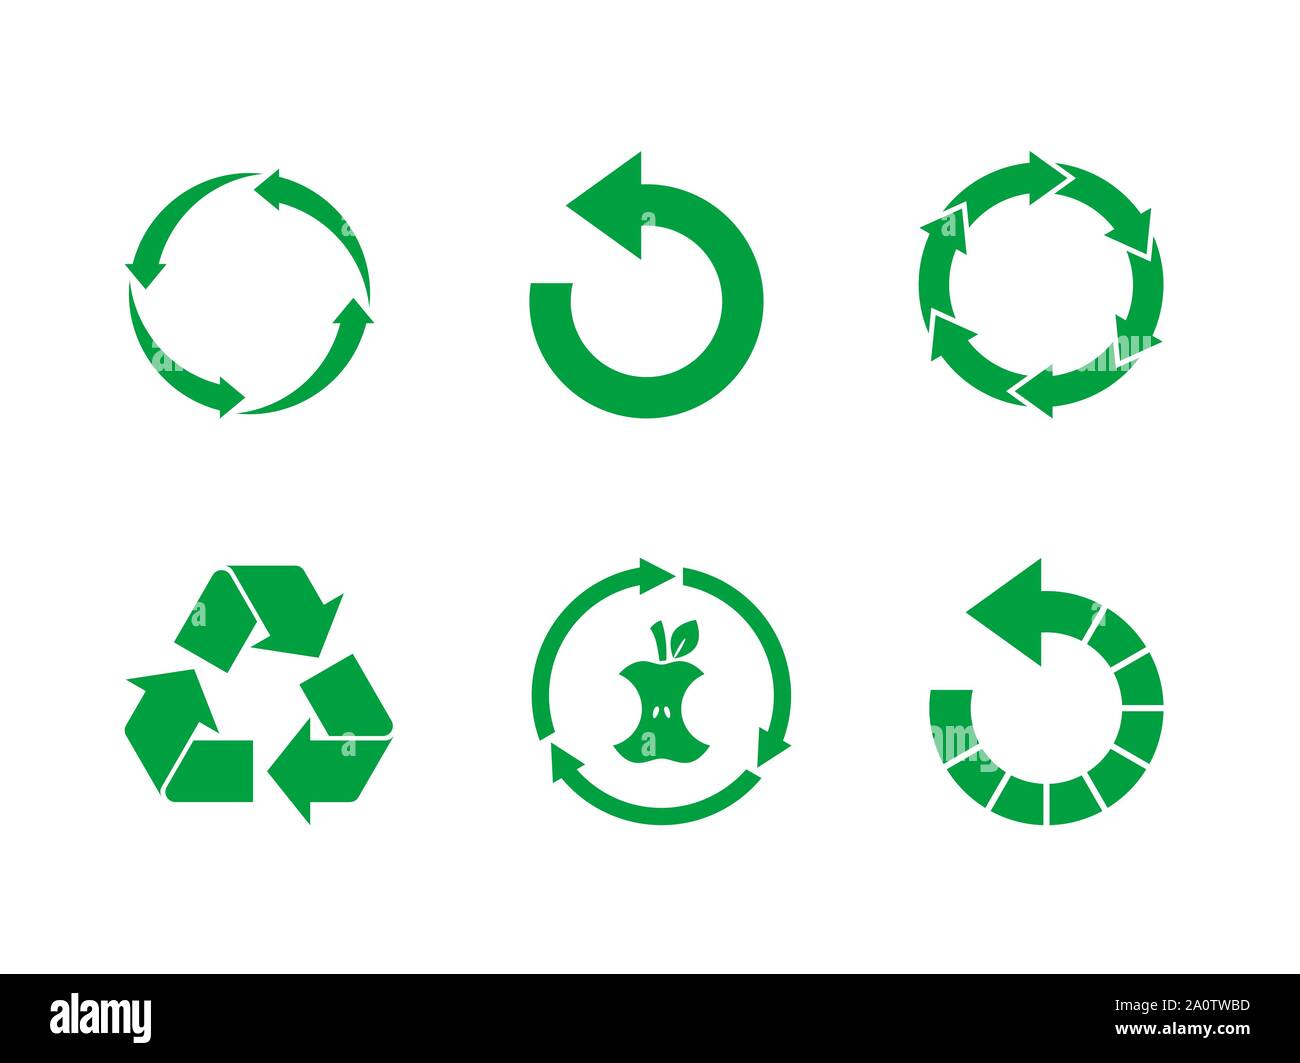 Reciclar verde signo establecido sobre fondo blanco. Reutilizar,renovar,compost de residuos de alimentos, concepto.Símbolo de reciclado establecido el vector.Colección de 6 diferentes iconos de reciclaje Ilustración del Vector